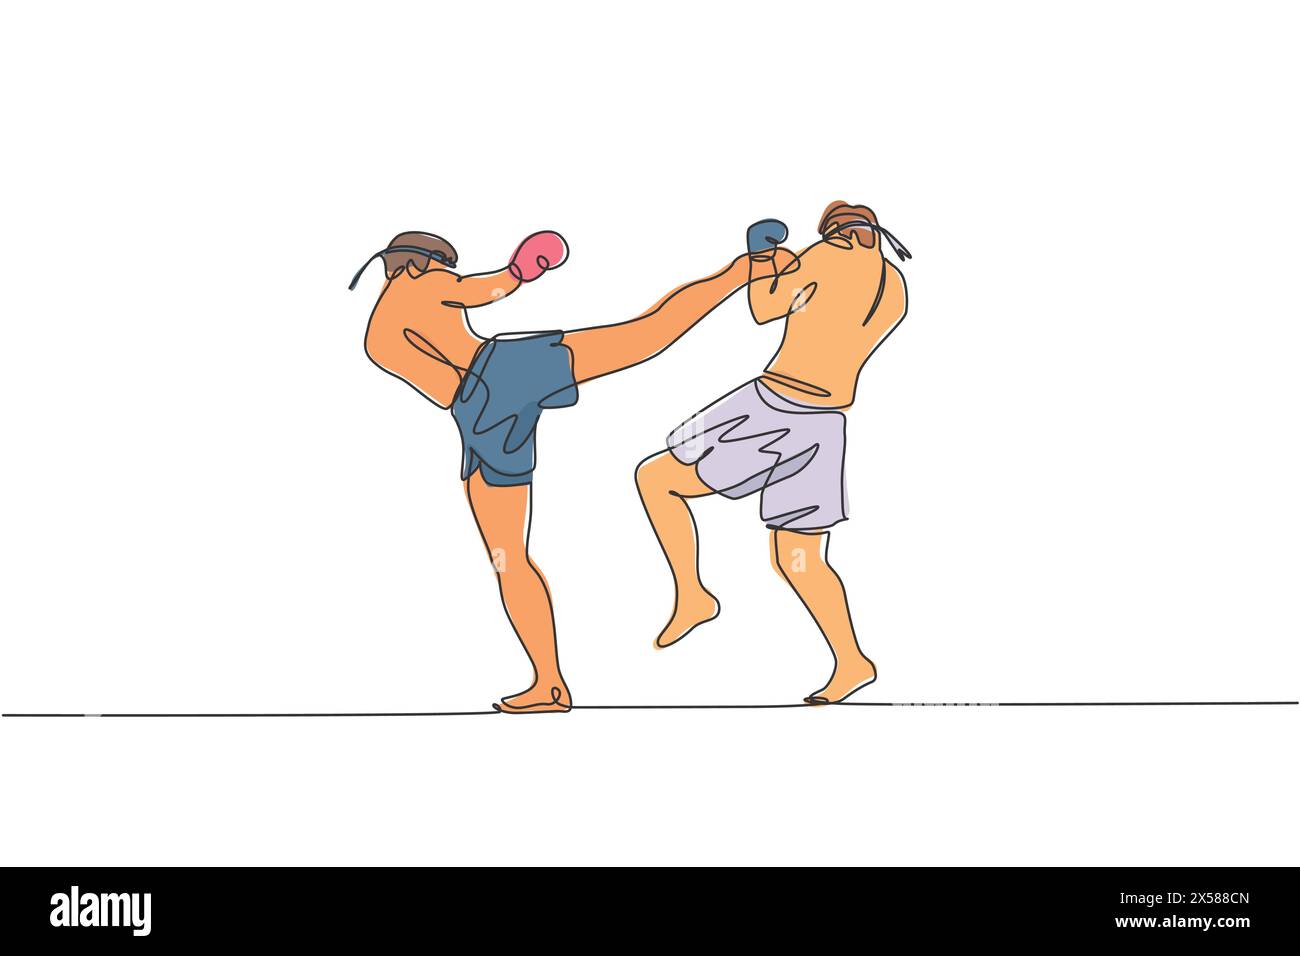 Dessin en ligne continue unique de deux jeunes hommes sportifs s'entraînant à la boxe thaïlandaise au centre du club de gym. Concept sportif combatif muay thai. Compétition Illustration de Vecteur